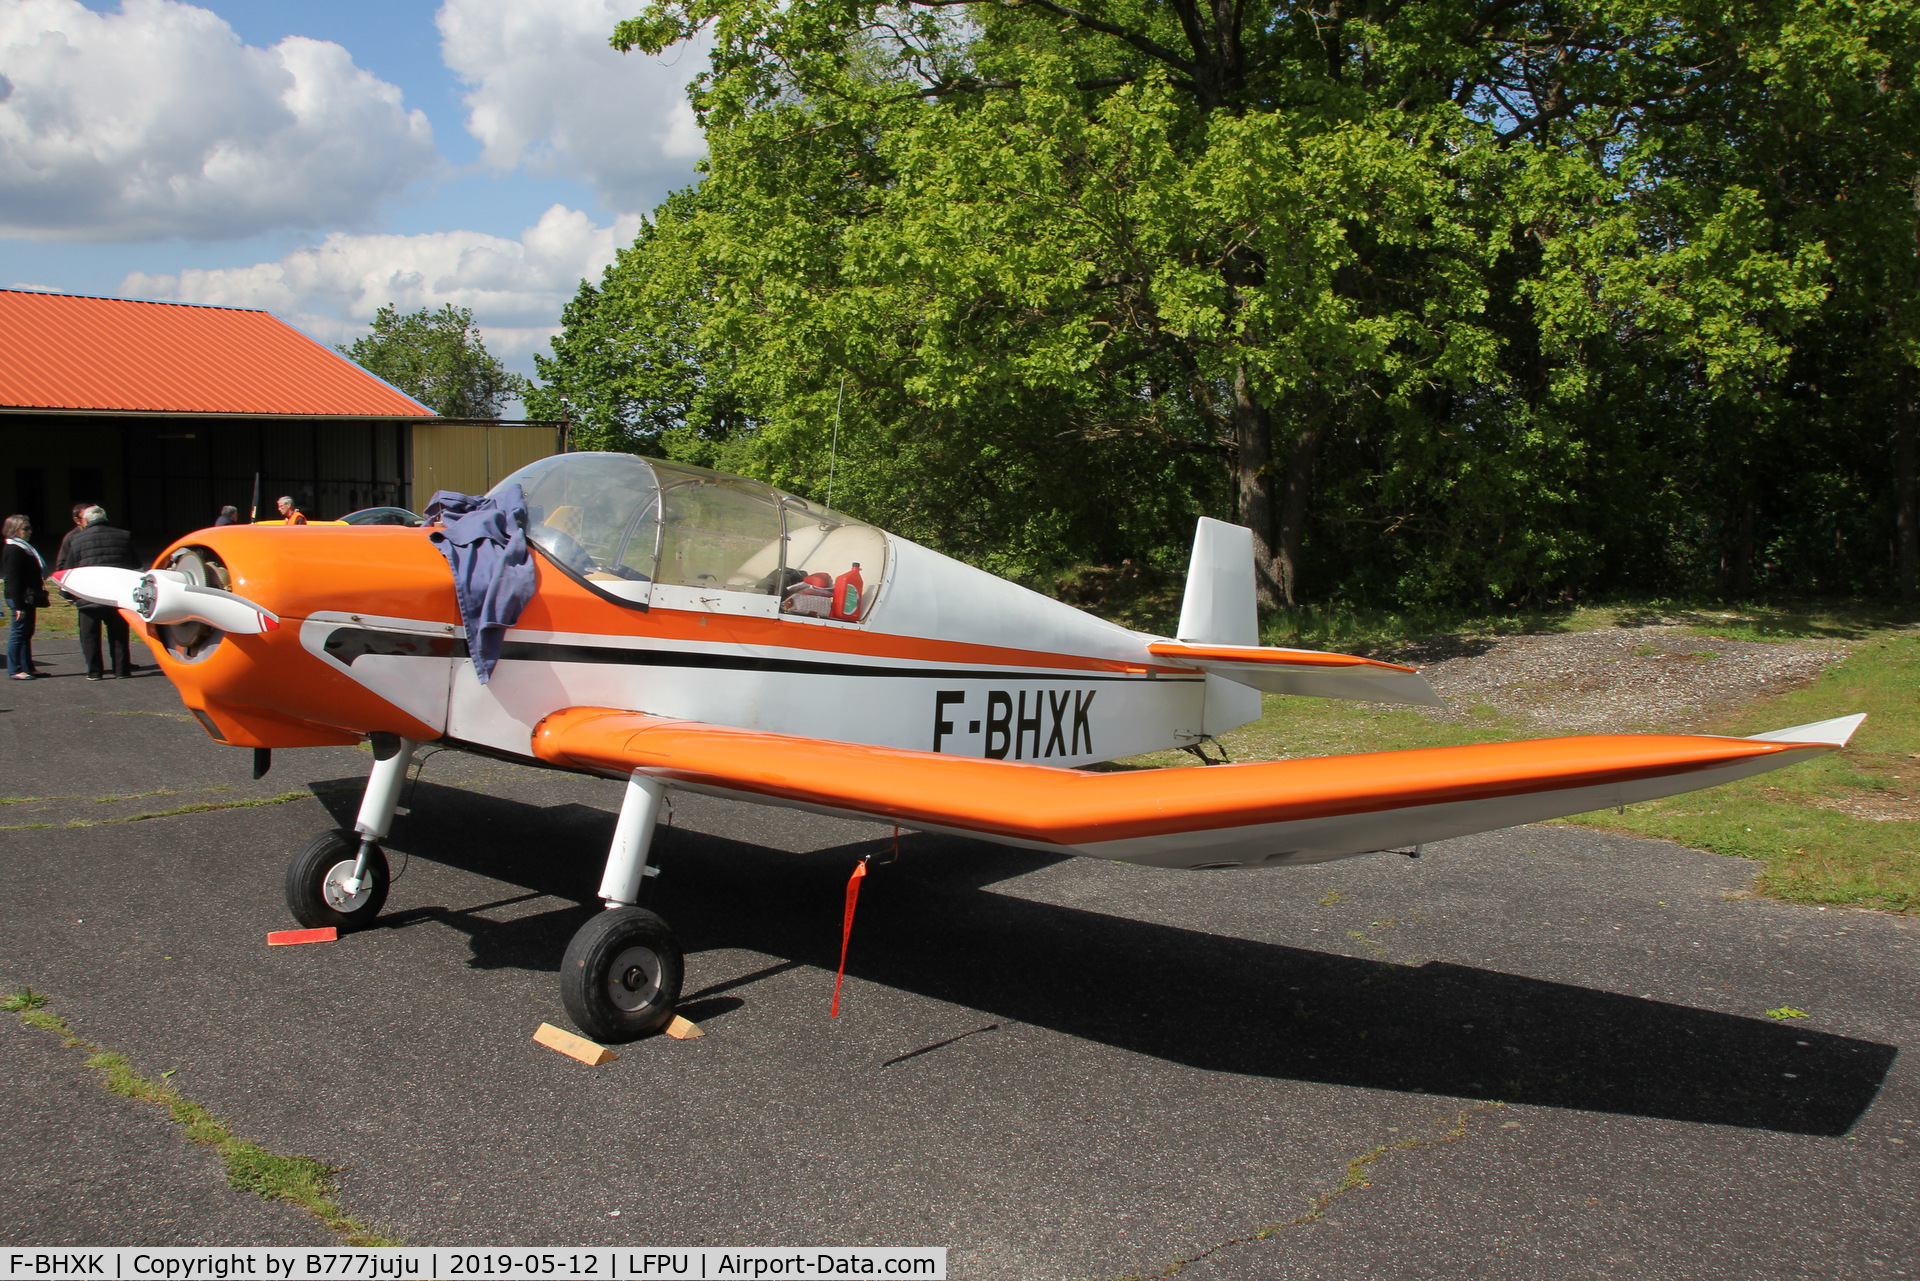 F-BHXK, Jodel D-112 C/N 512, at Moret